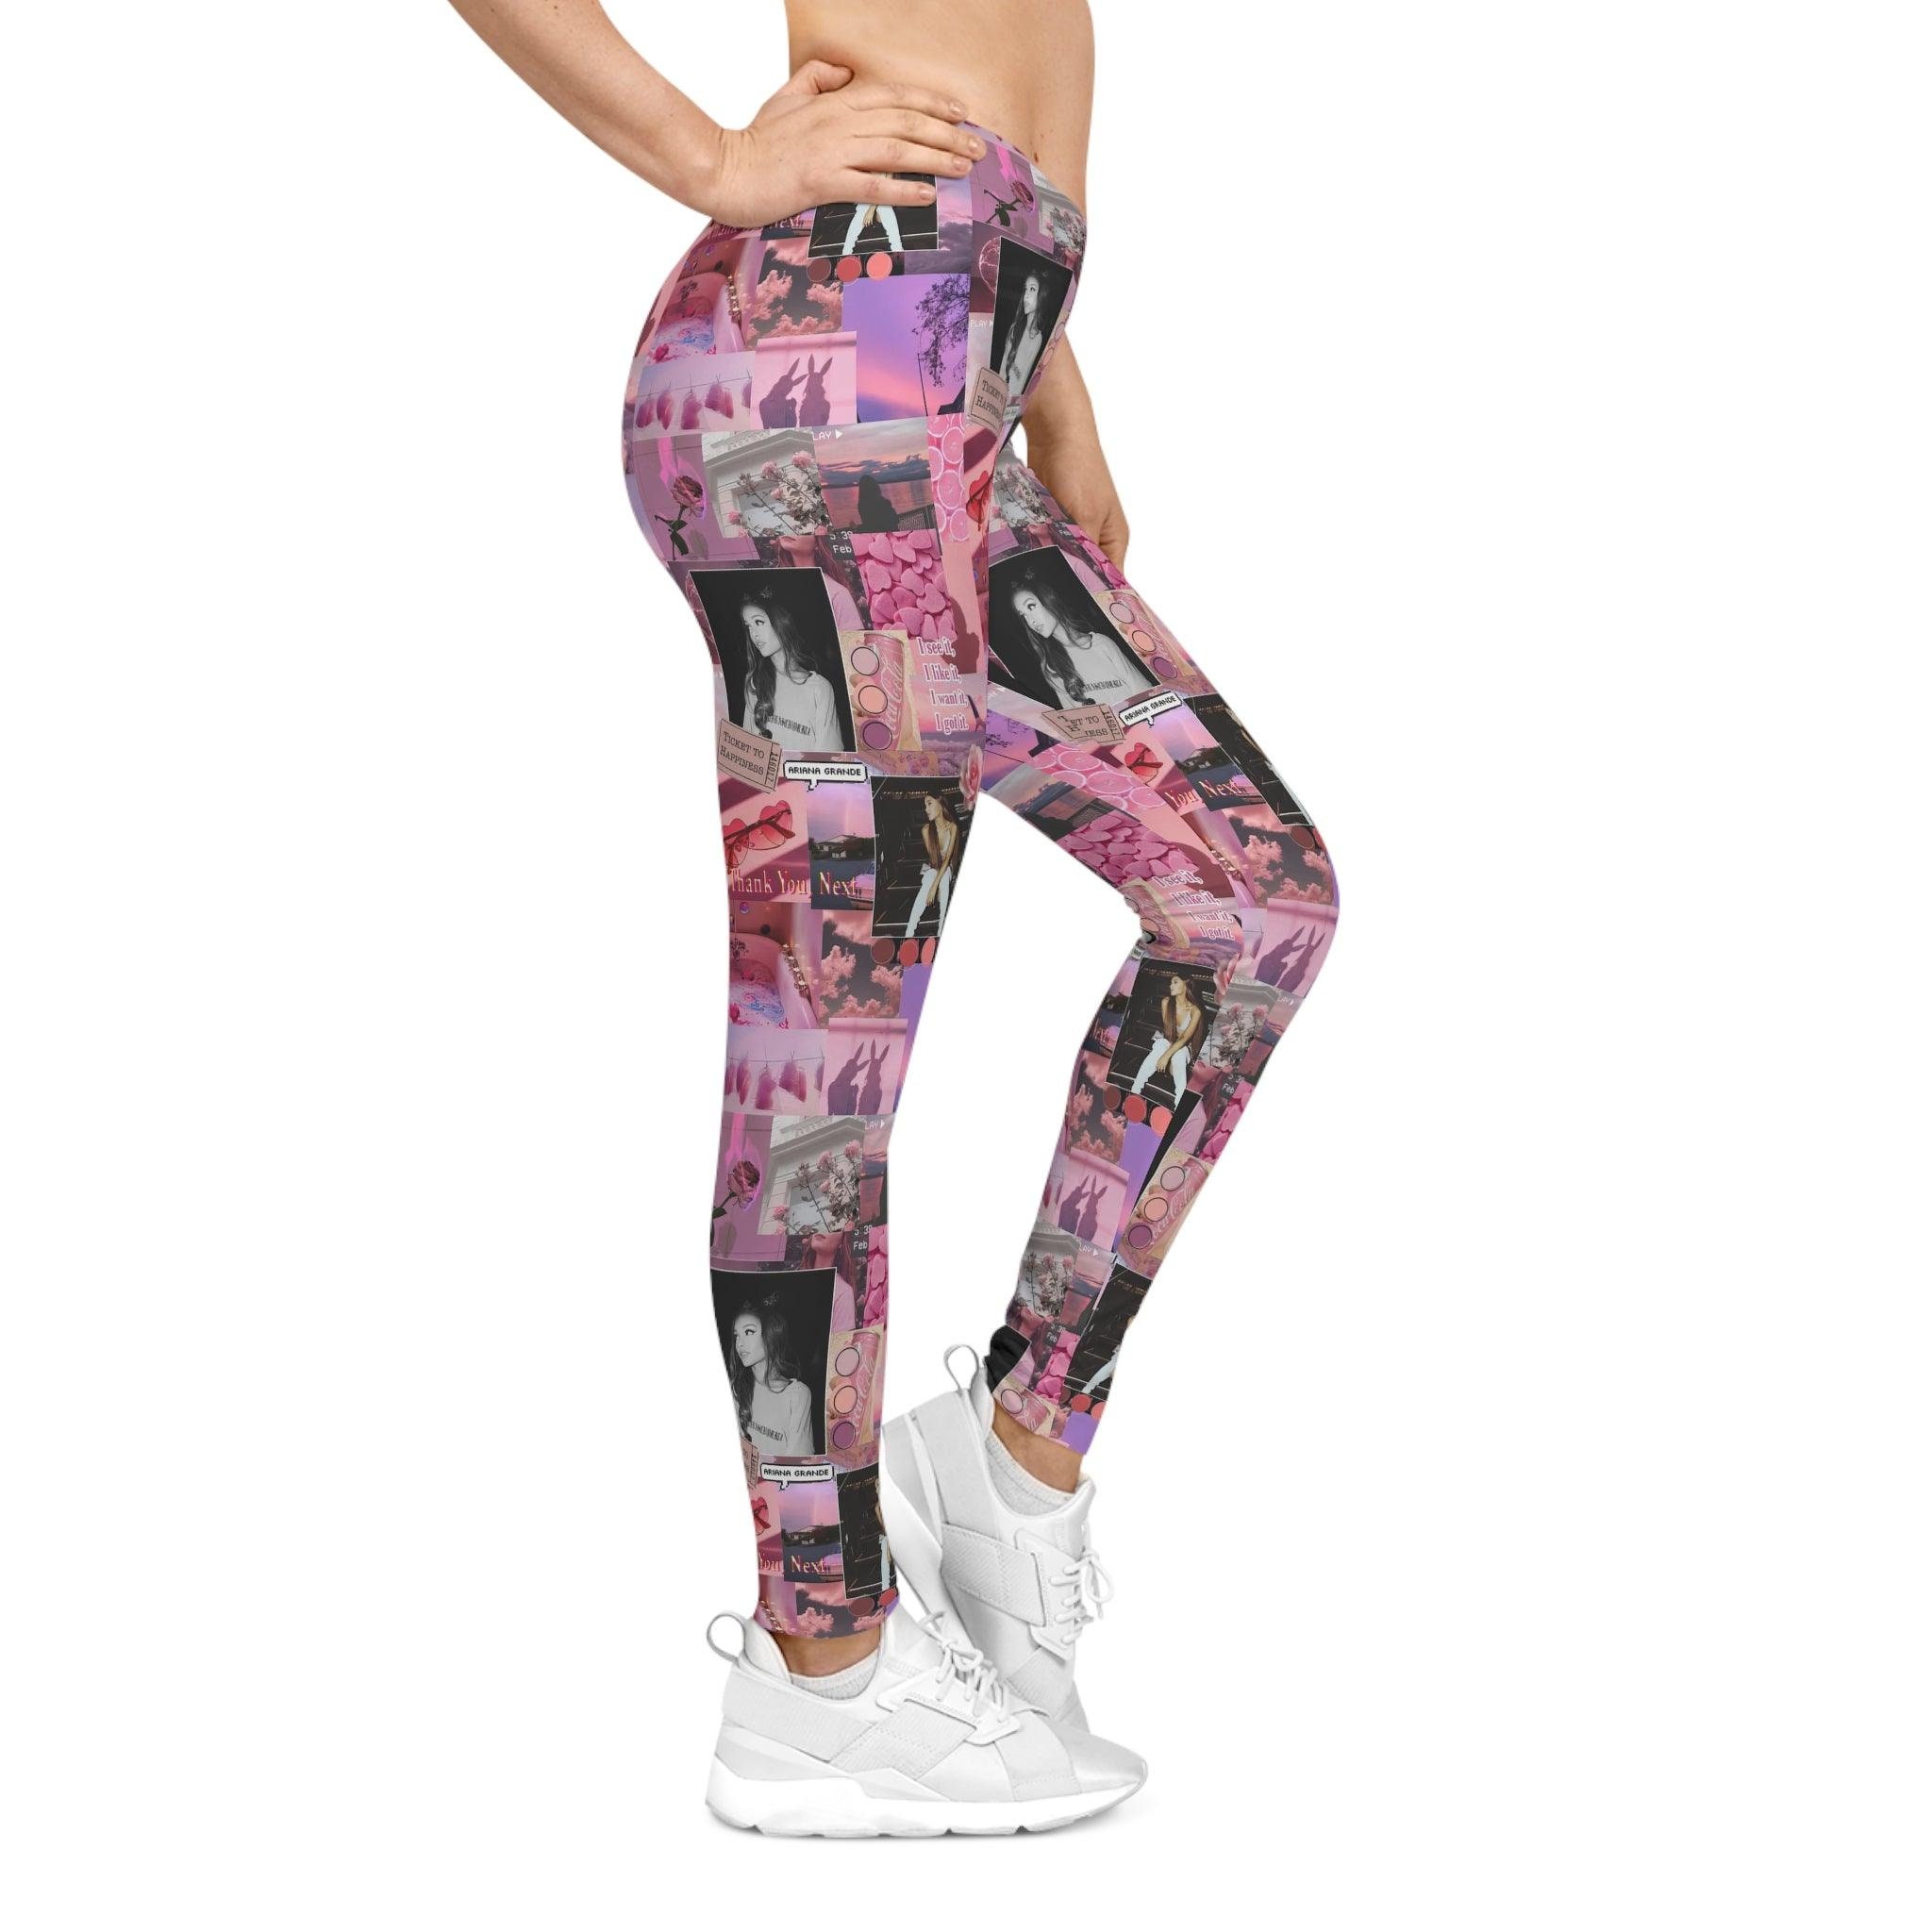 Ariana Pink Aesthetic Leggings sold by Eerie-Ilene, SKU 99773280